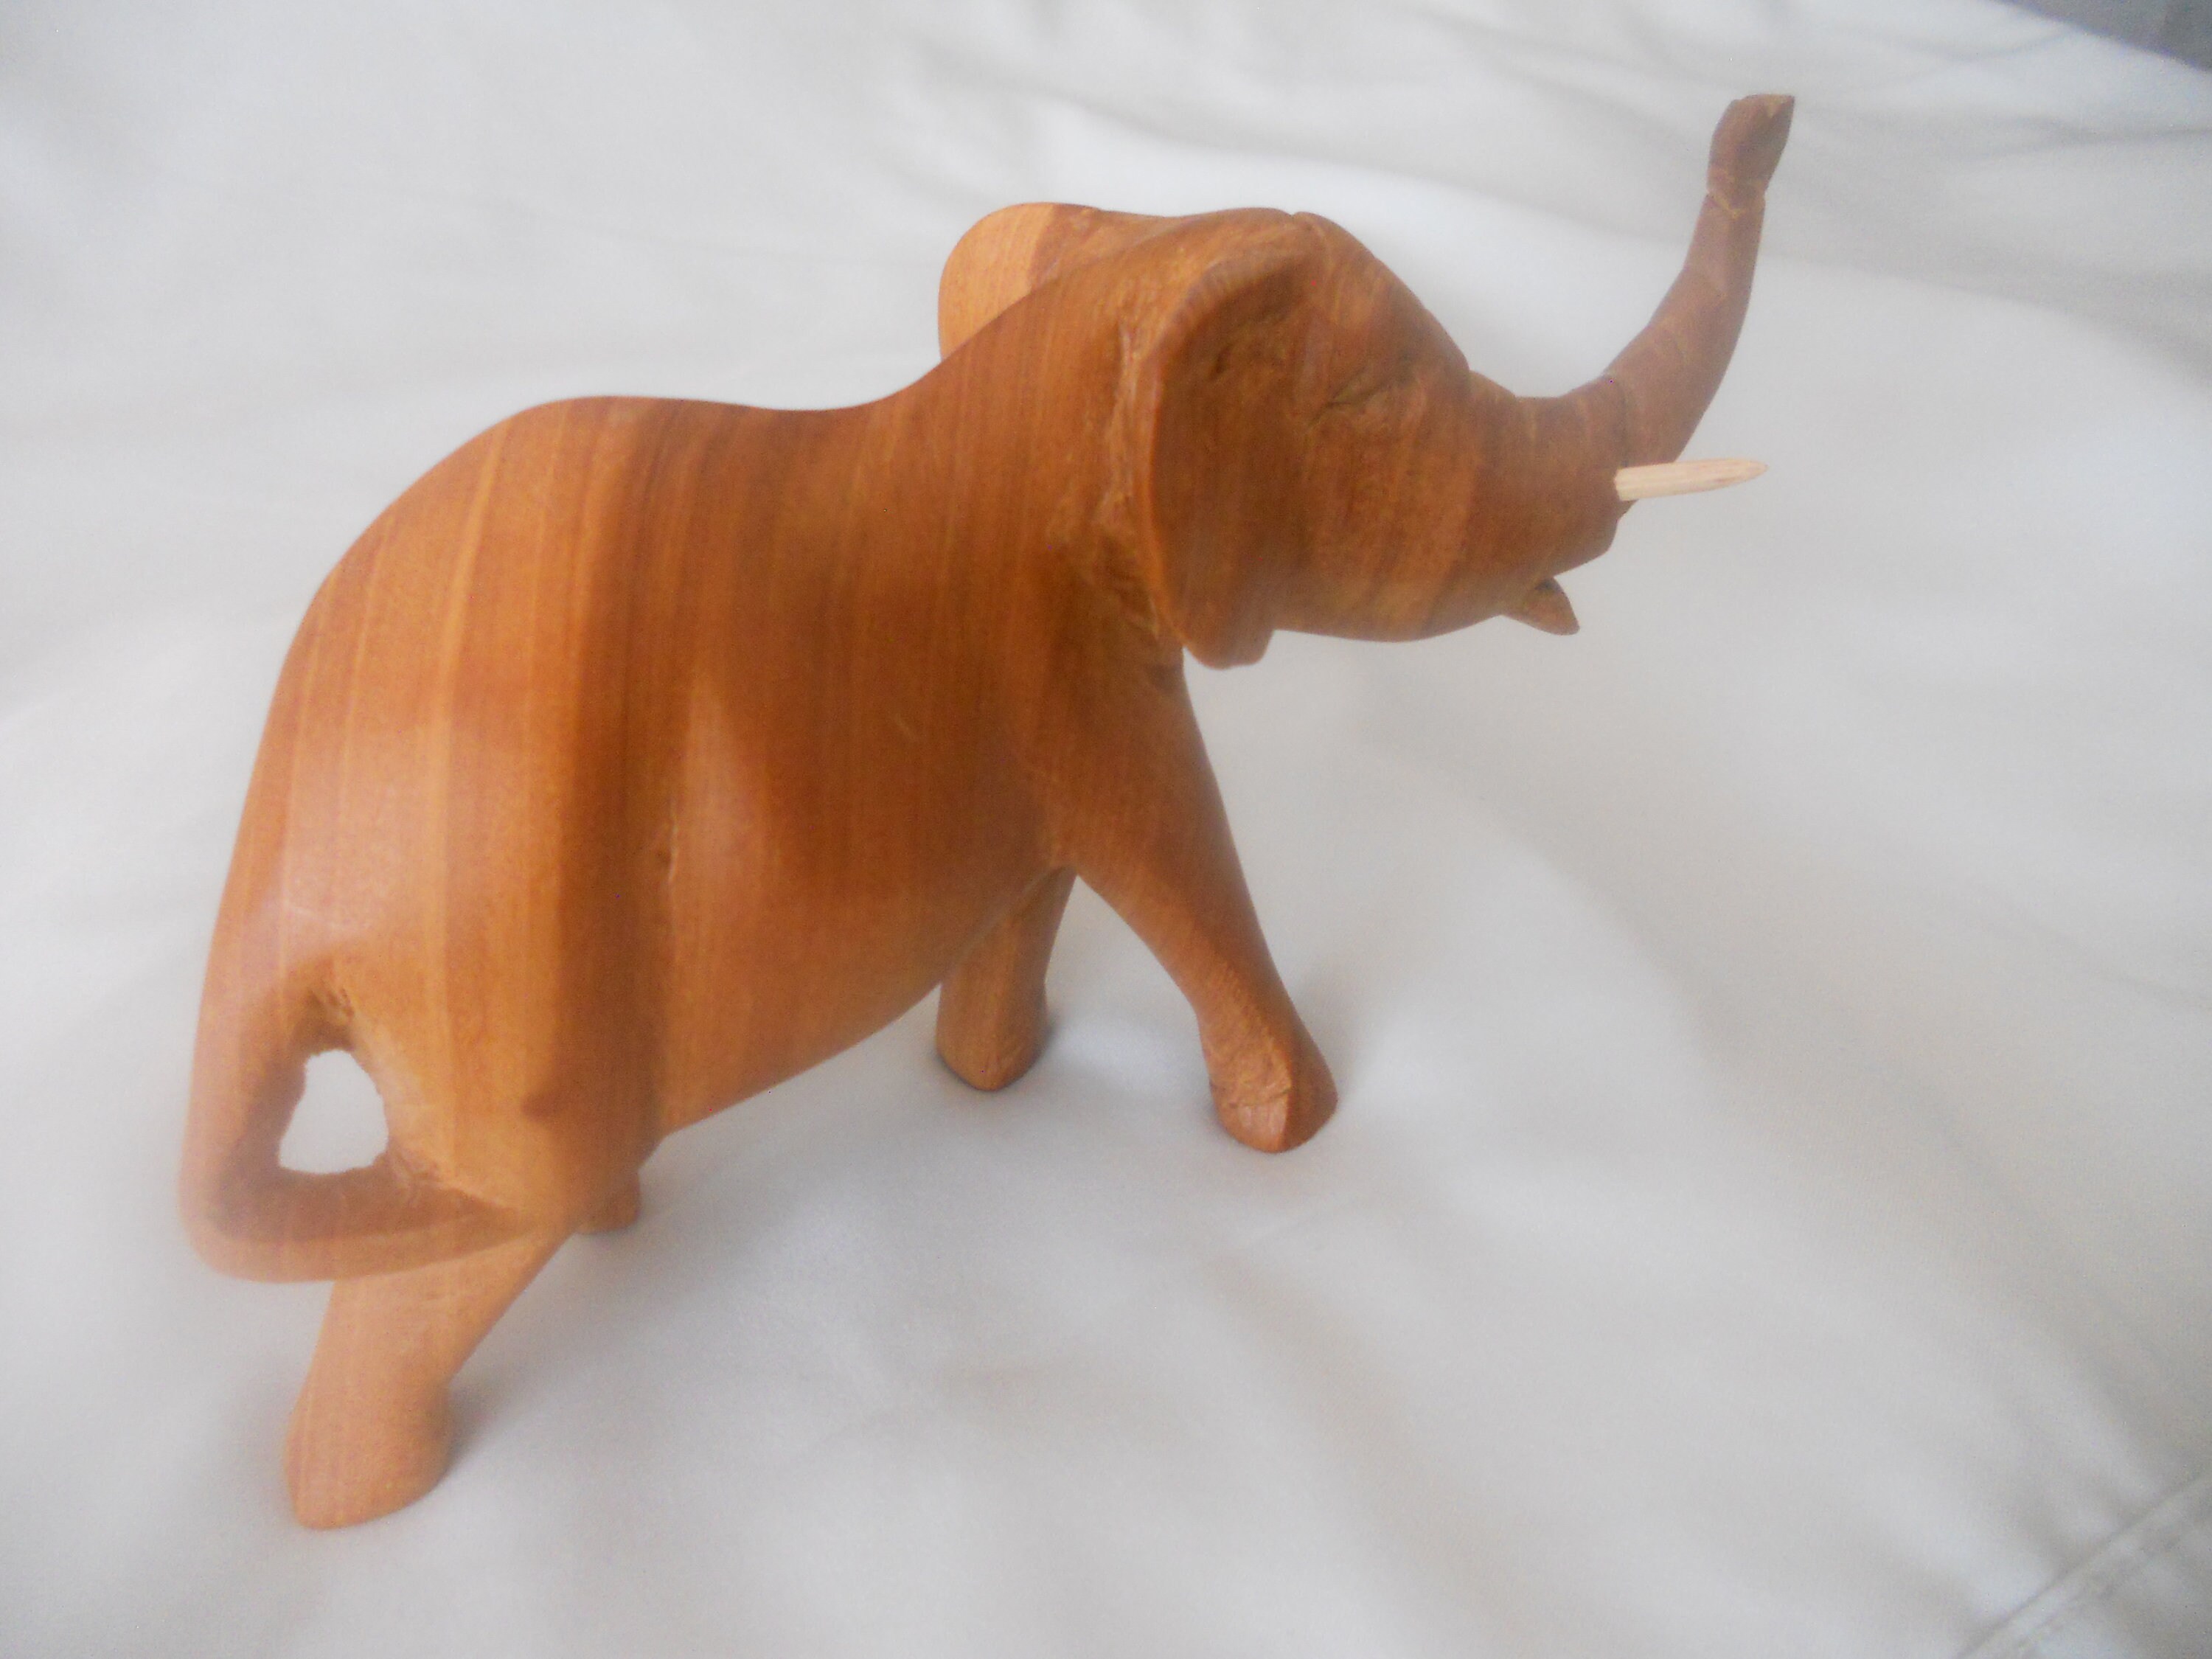 Tronco De Elefante De Madera Tallada A Mano Artesanía Deco Ornamento de comercio justo 